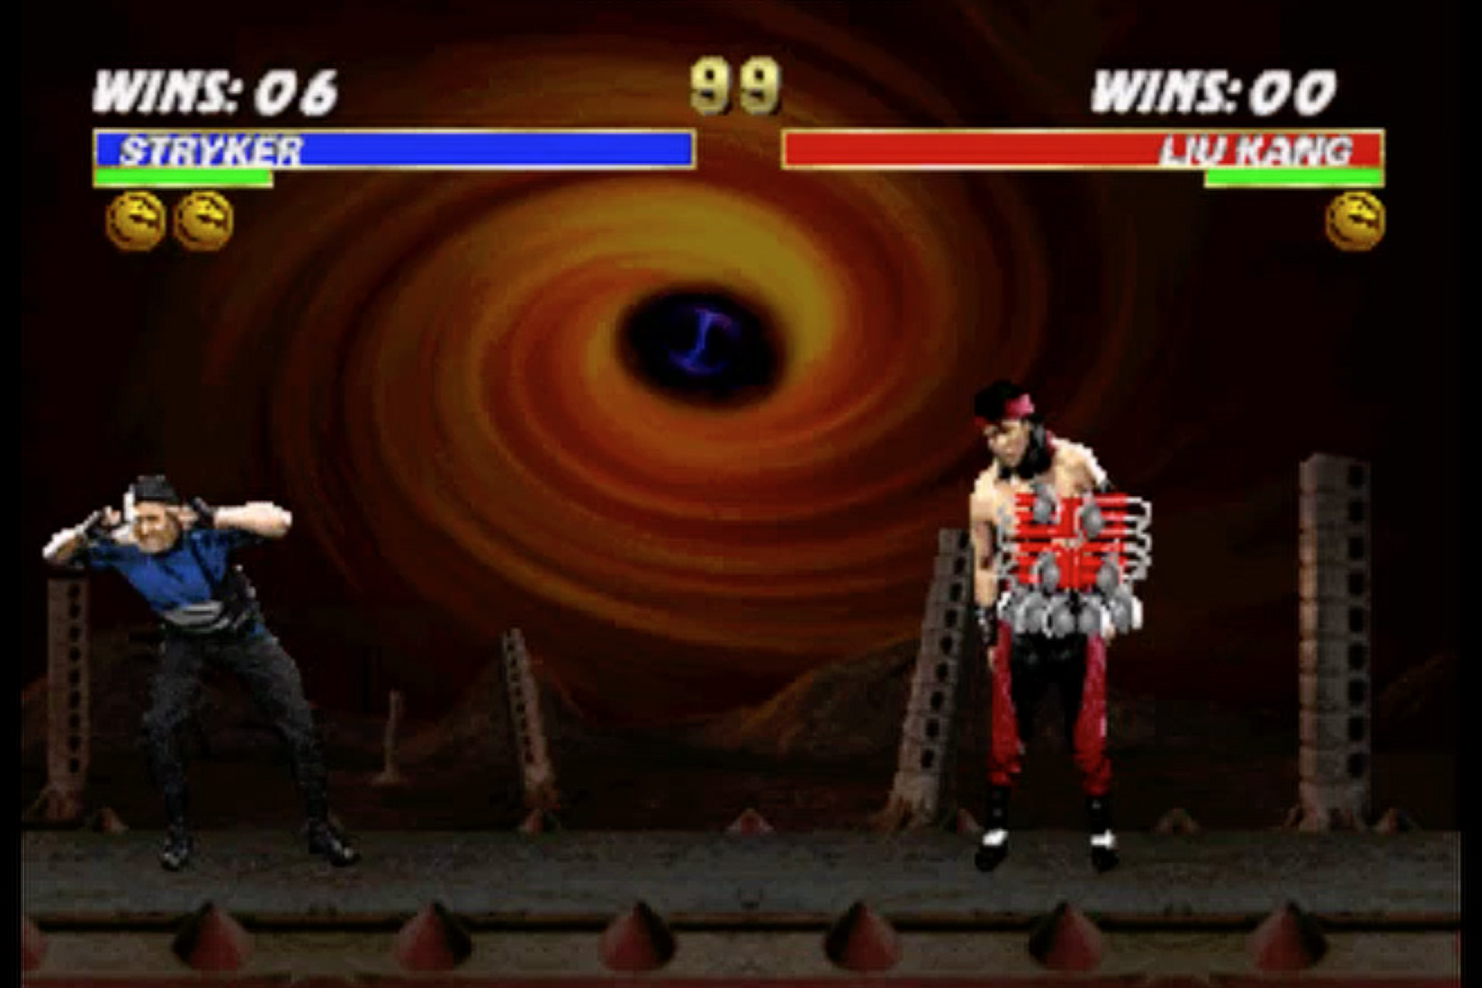 Veja os melhores fatalities de Mortal Kombat